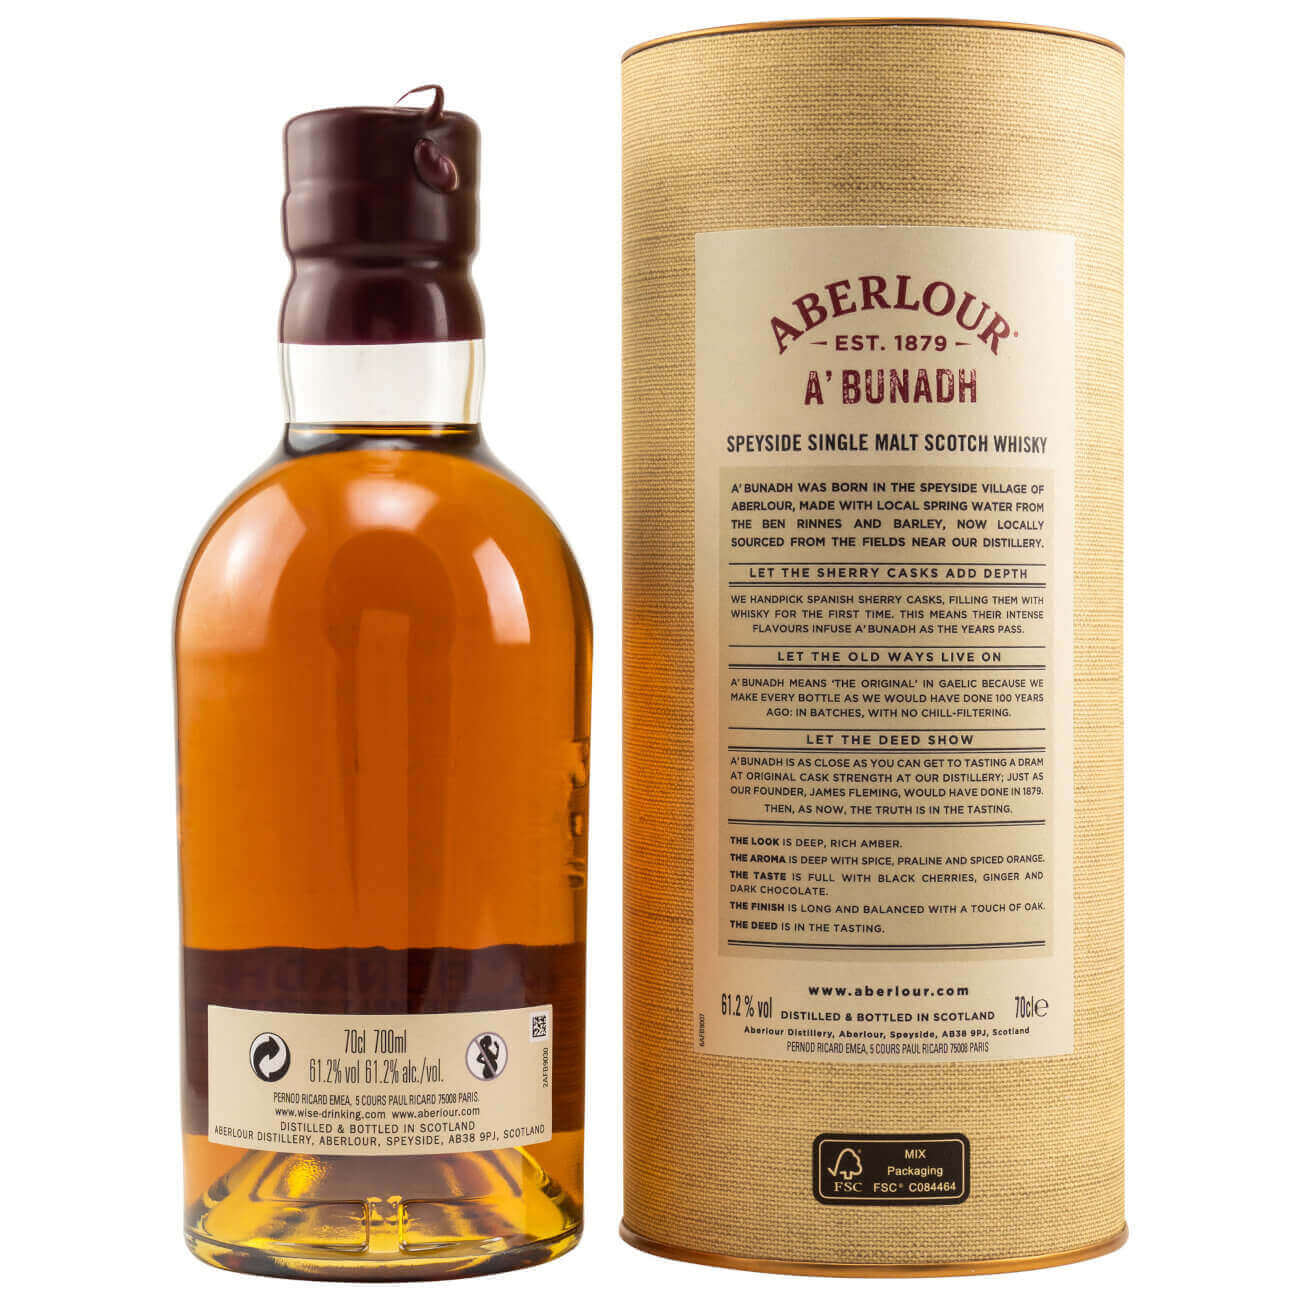 Flasche Aberlour A'Bunadh Whisky mit Verpackung Rückseite